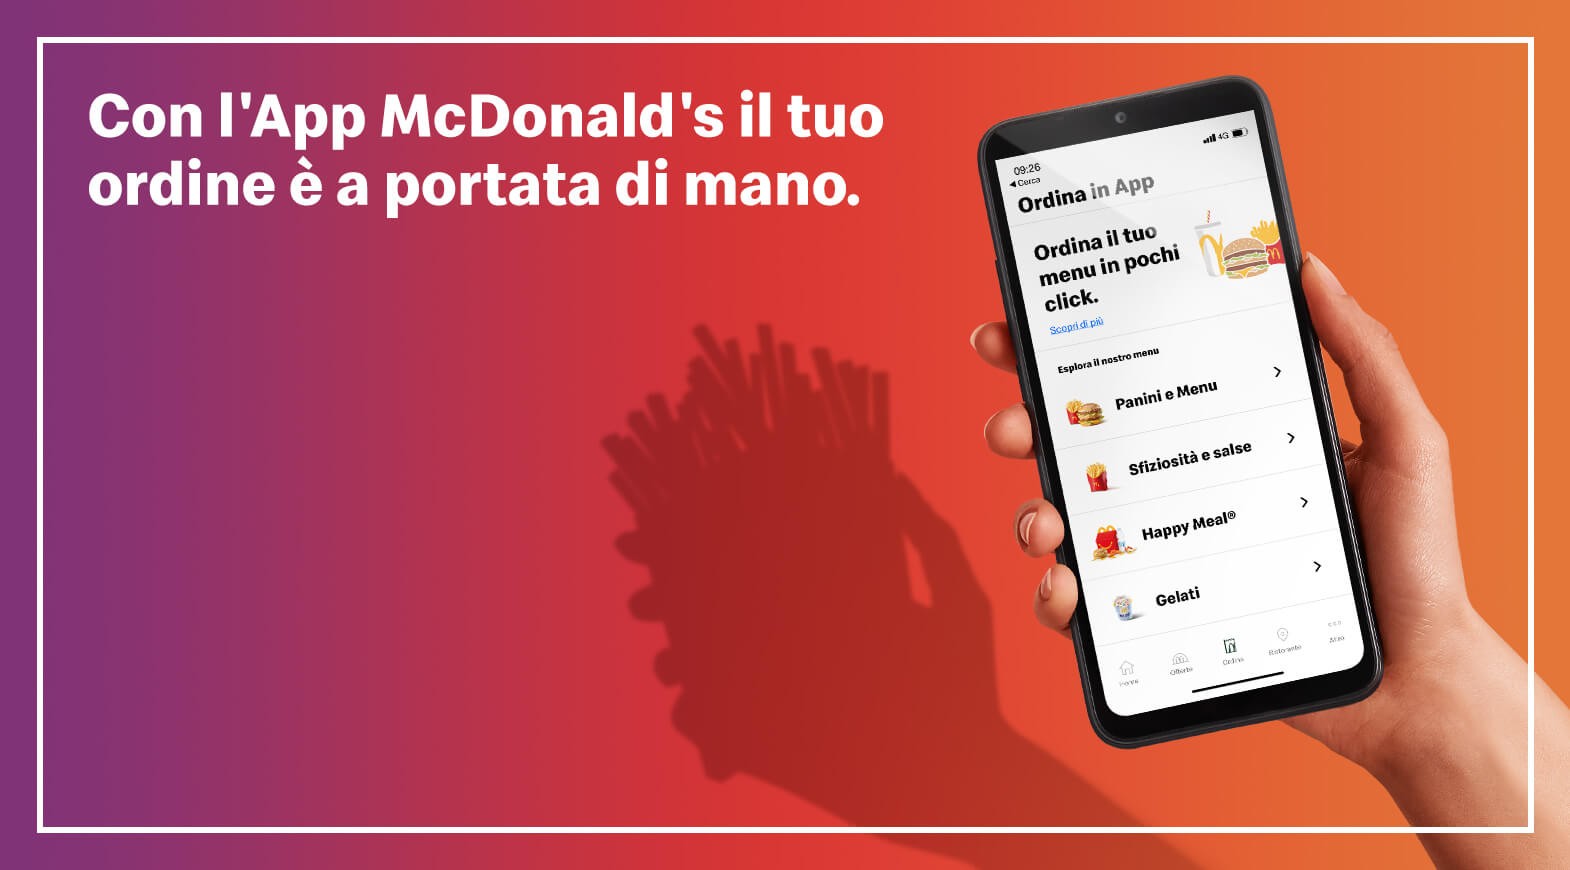 Con l’App McDonald’s il tuo ordine è a portata di mano.